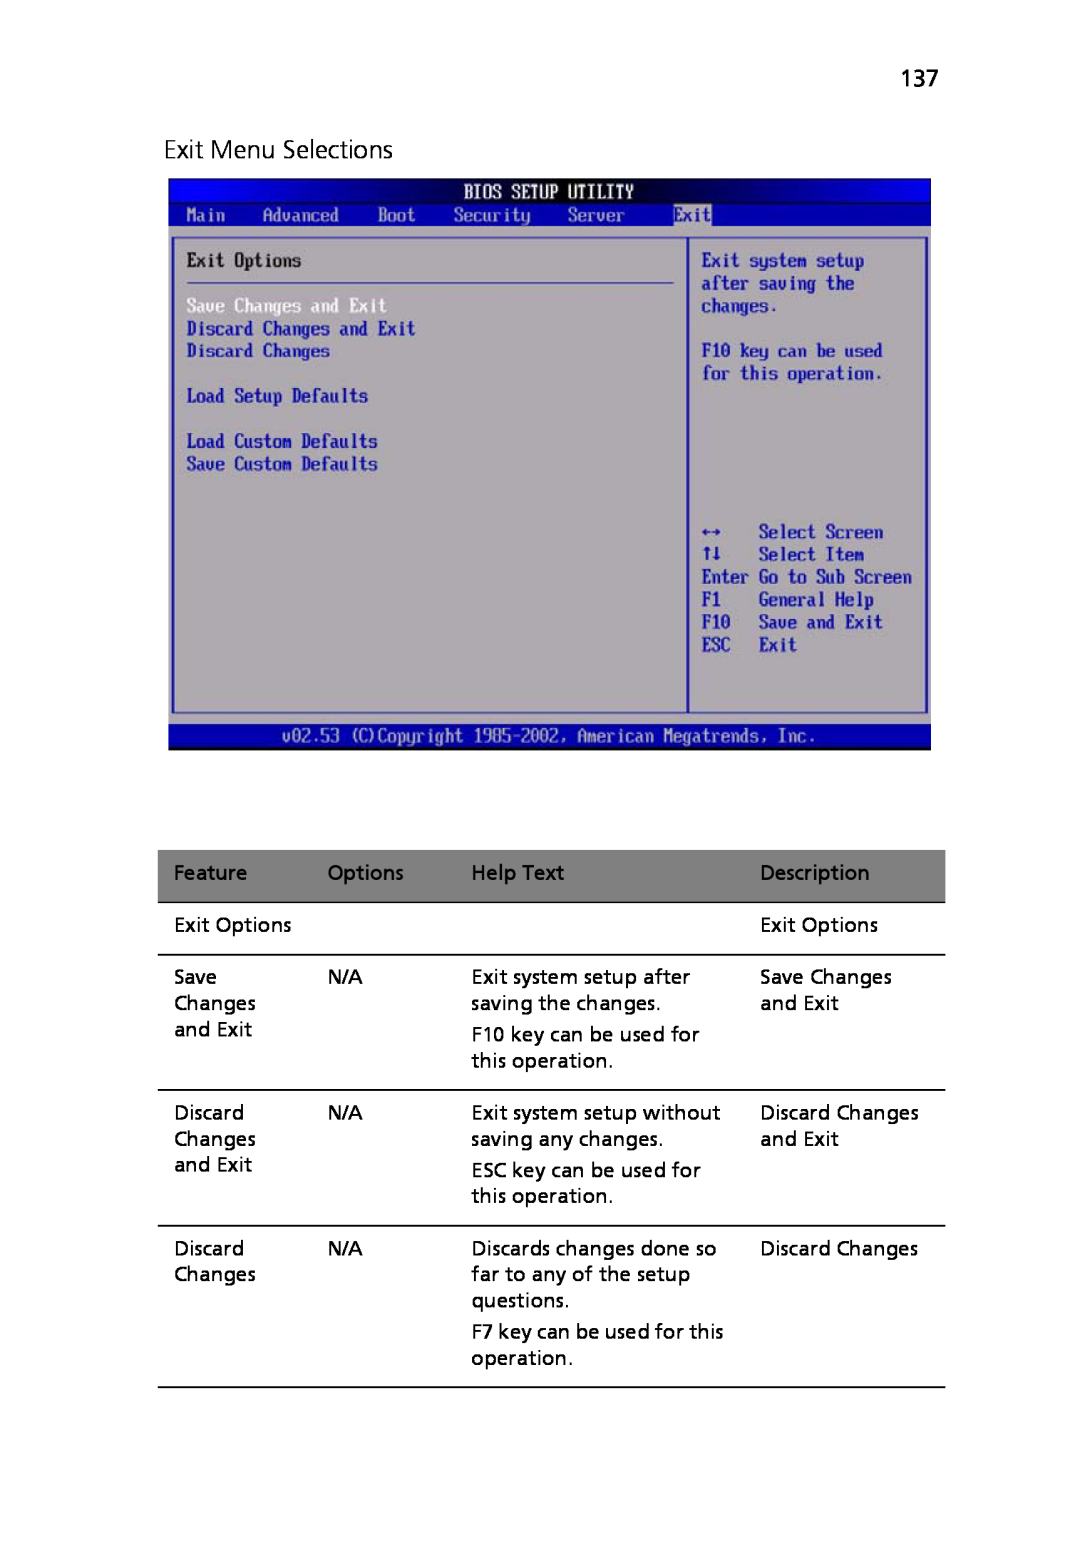 Acer Altos R710 manual Exit Menu Selections, Feature, Options, Help Text, Description 